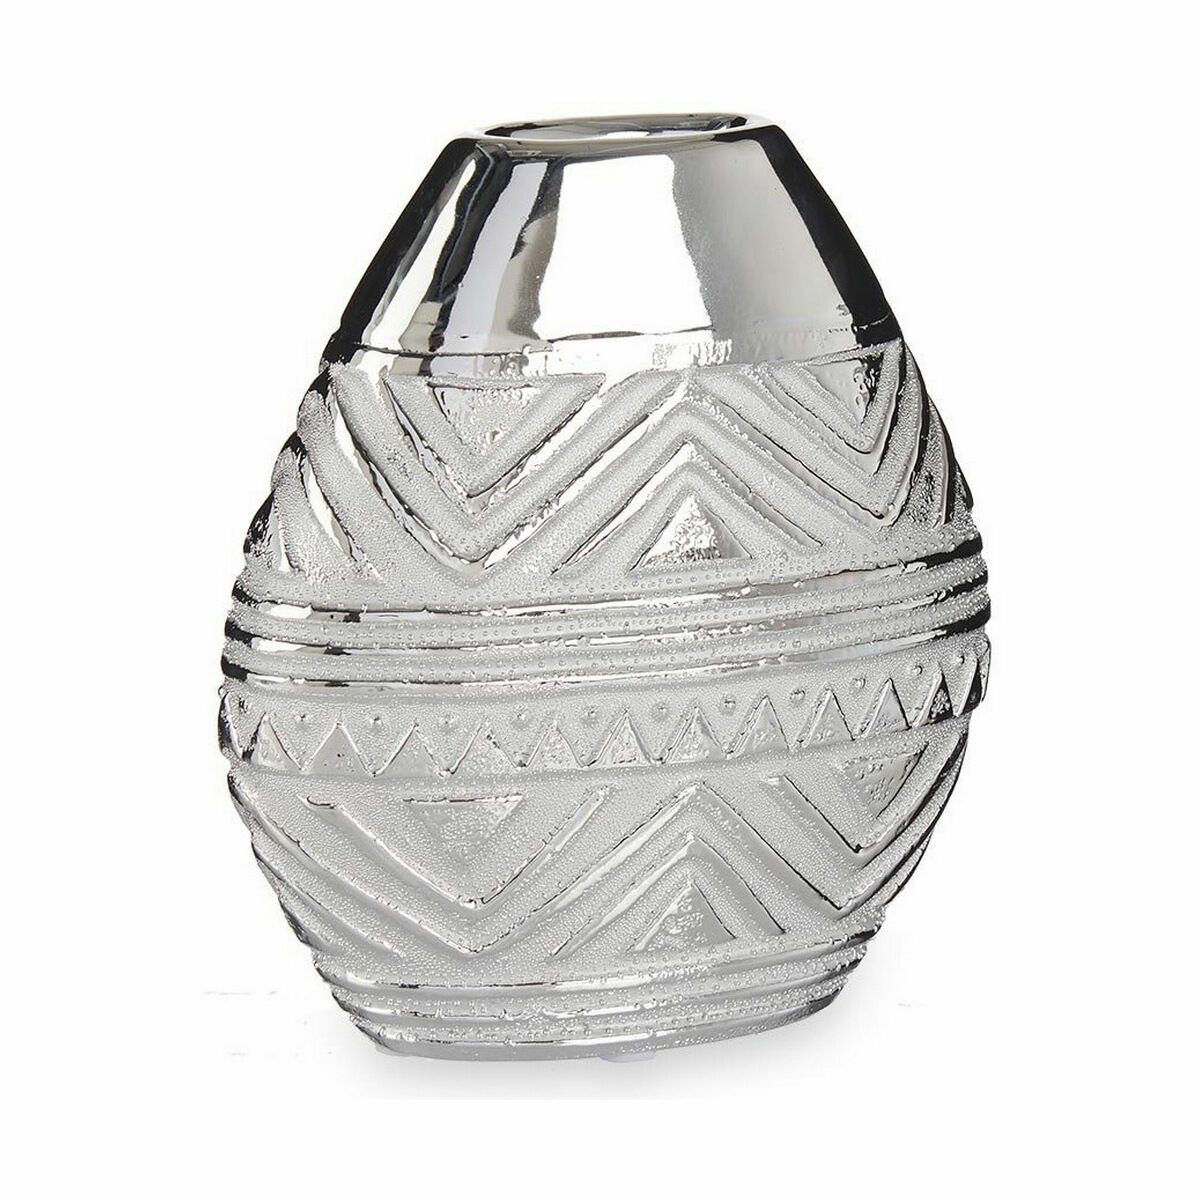 Dekovase Vase cm aus x 19,5 Silberfarben x 17,5 Keramik Stück 8 6 Decor Gift Breite